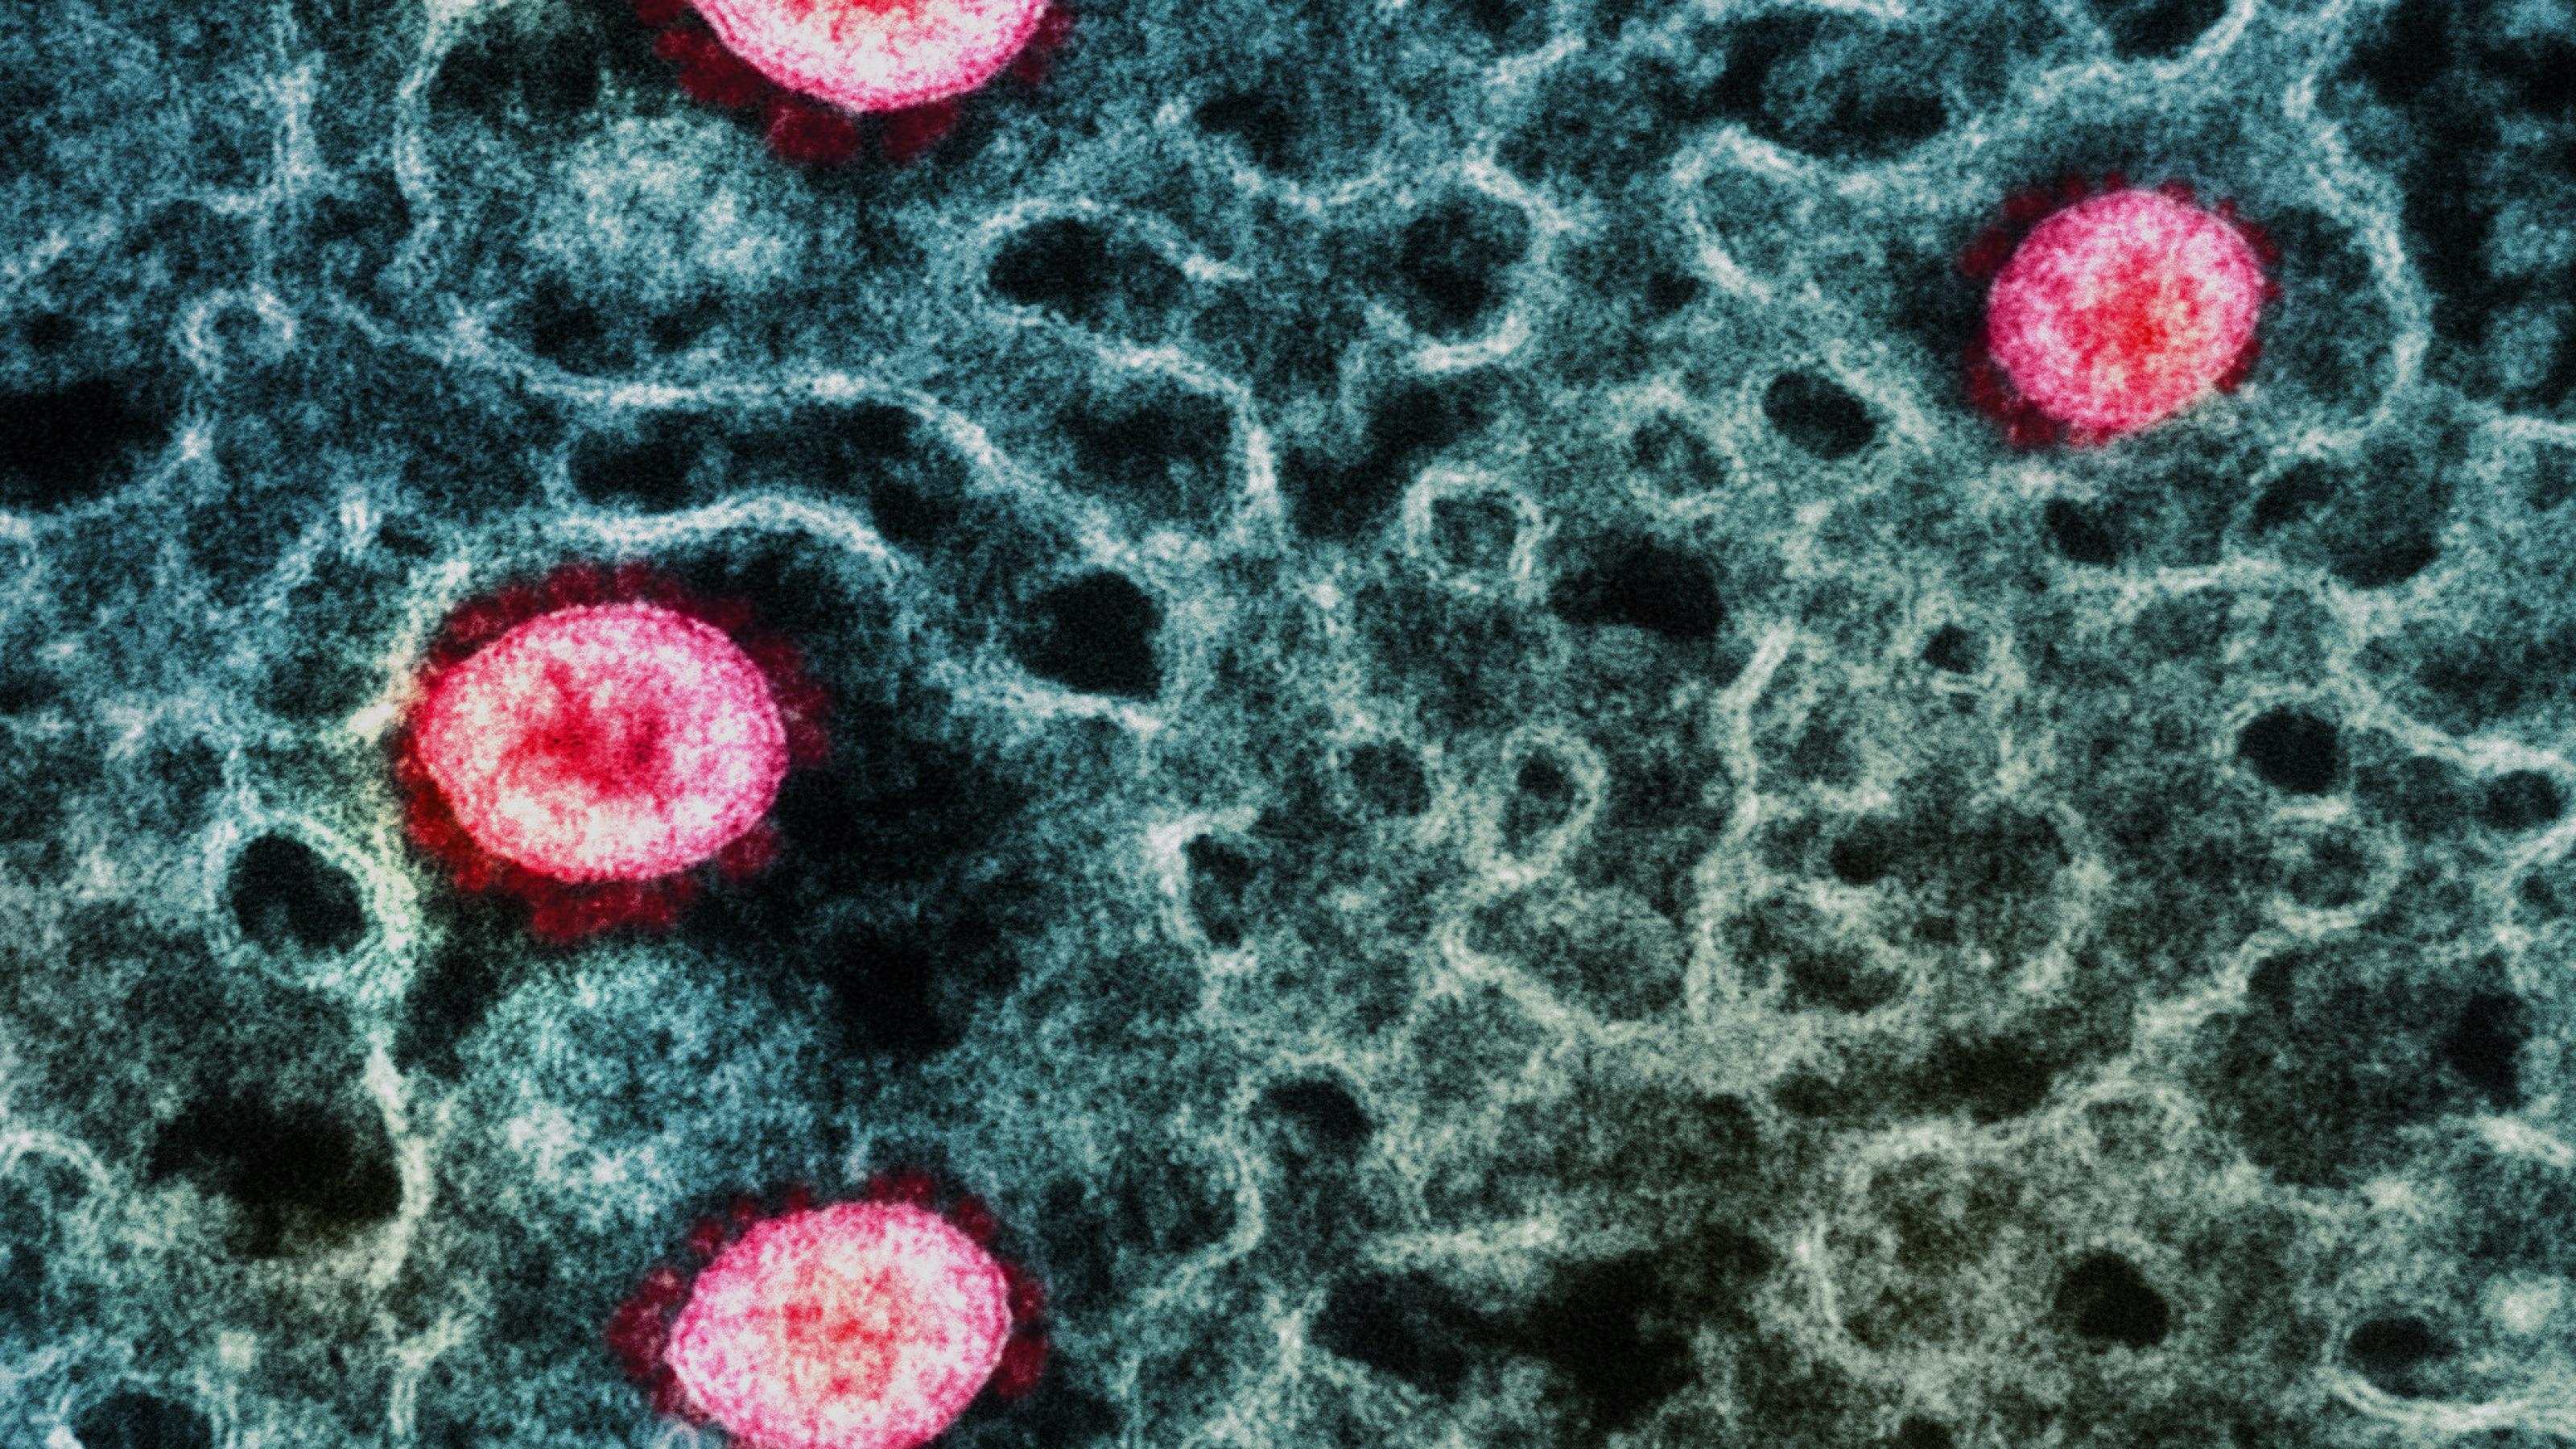 Elektronenmikroskopische Aufnahme von Sars-CoV-2, Omikron – einzelne Viruspartikel sind pink gefärbt – das sich Inneren einer Zelle aufhält.